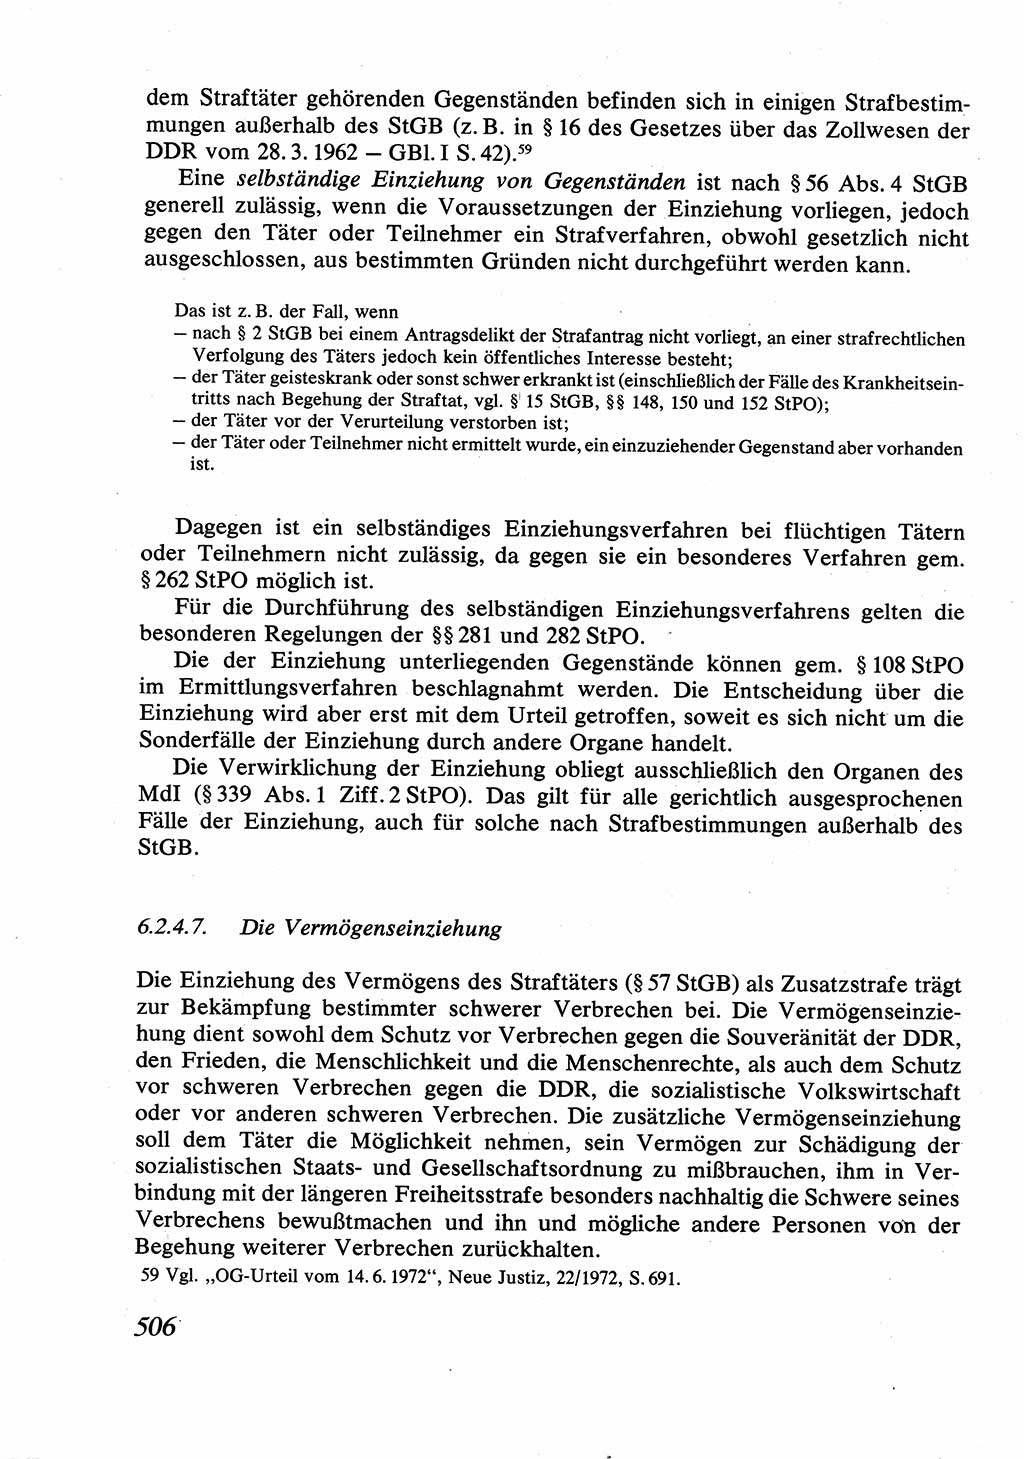 Strafrecht [Deutsche Demokratische Republik (DDR)], Allgemeiner Teil, Lehrbuch 1976, Seite 506 (Strafr. DDR AT Lb. 1976, S. 506)